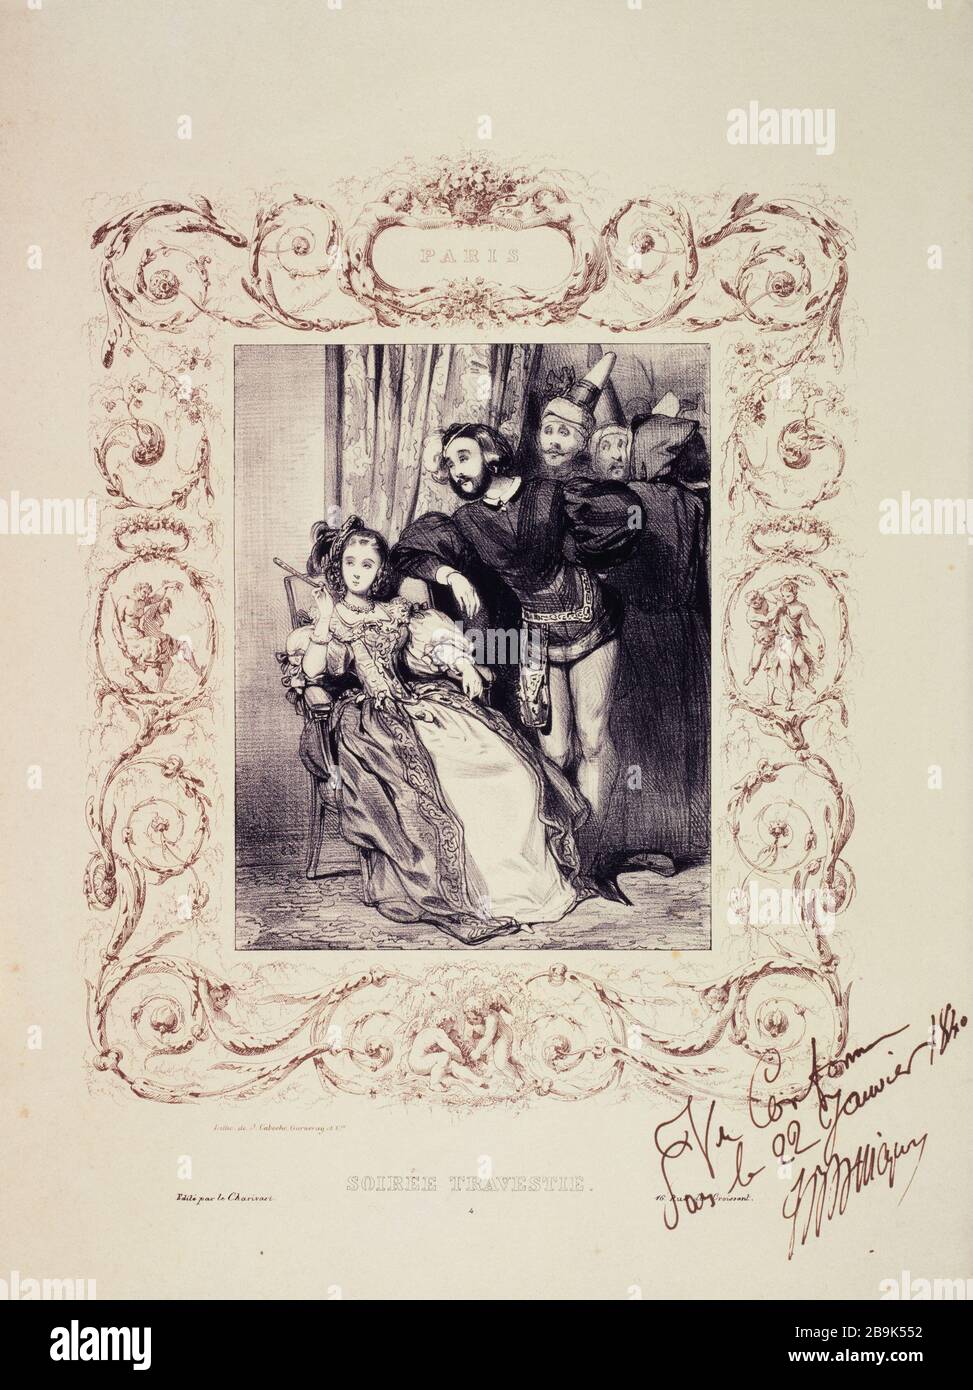 Paris - verkleideter Abend Paul Gavarni (1804-66). "Paris - soirée travestie". Tiefdruck. Paris, musée Carnavalet. Stockfoto